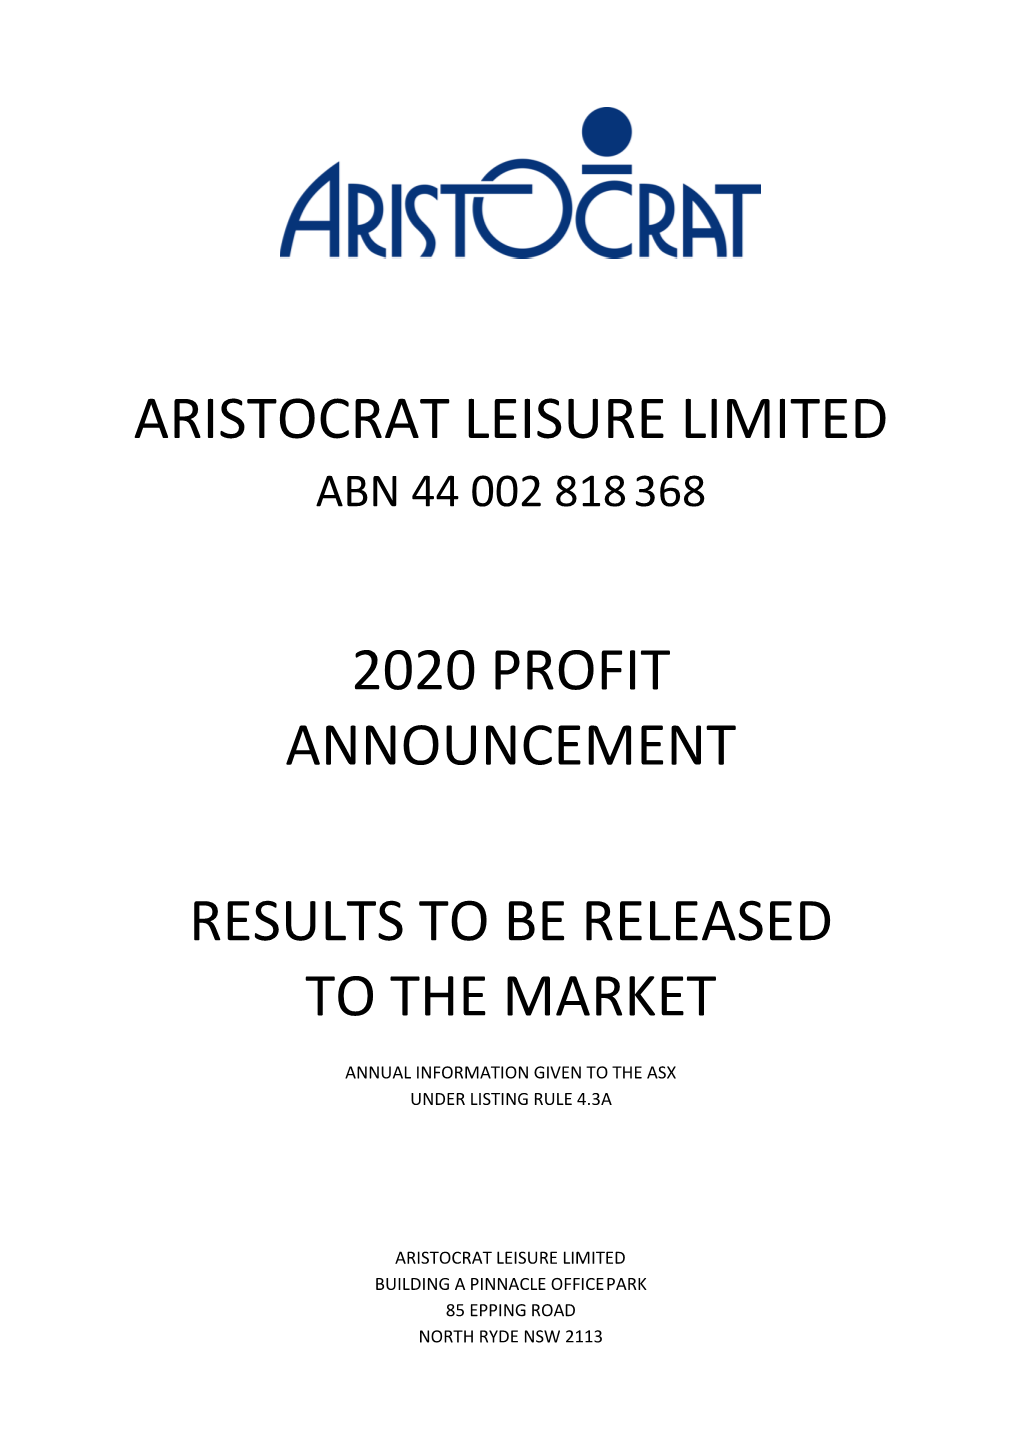 Aristocrat Leisure Limited 2020 Profit Announcement